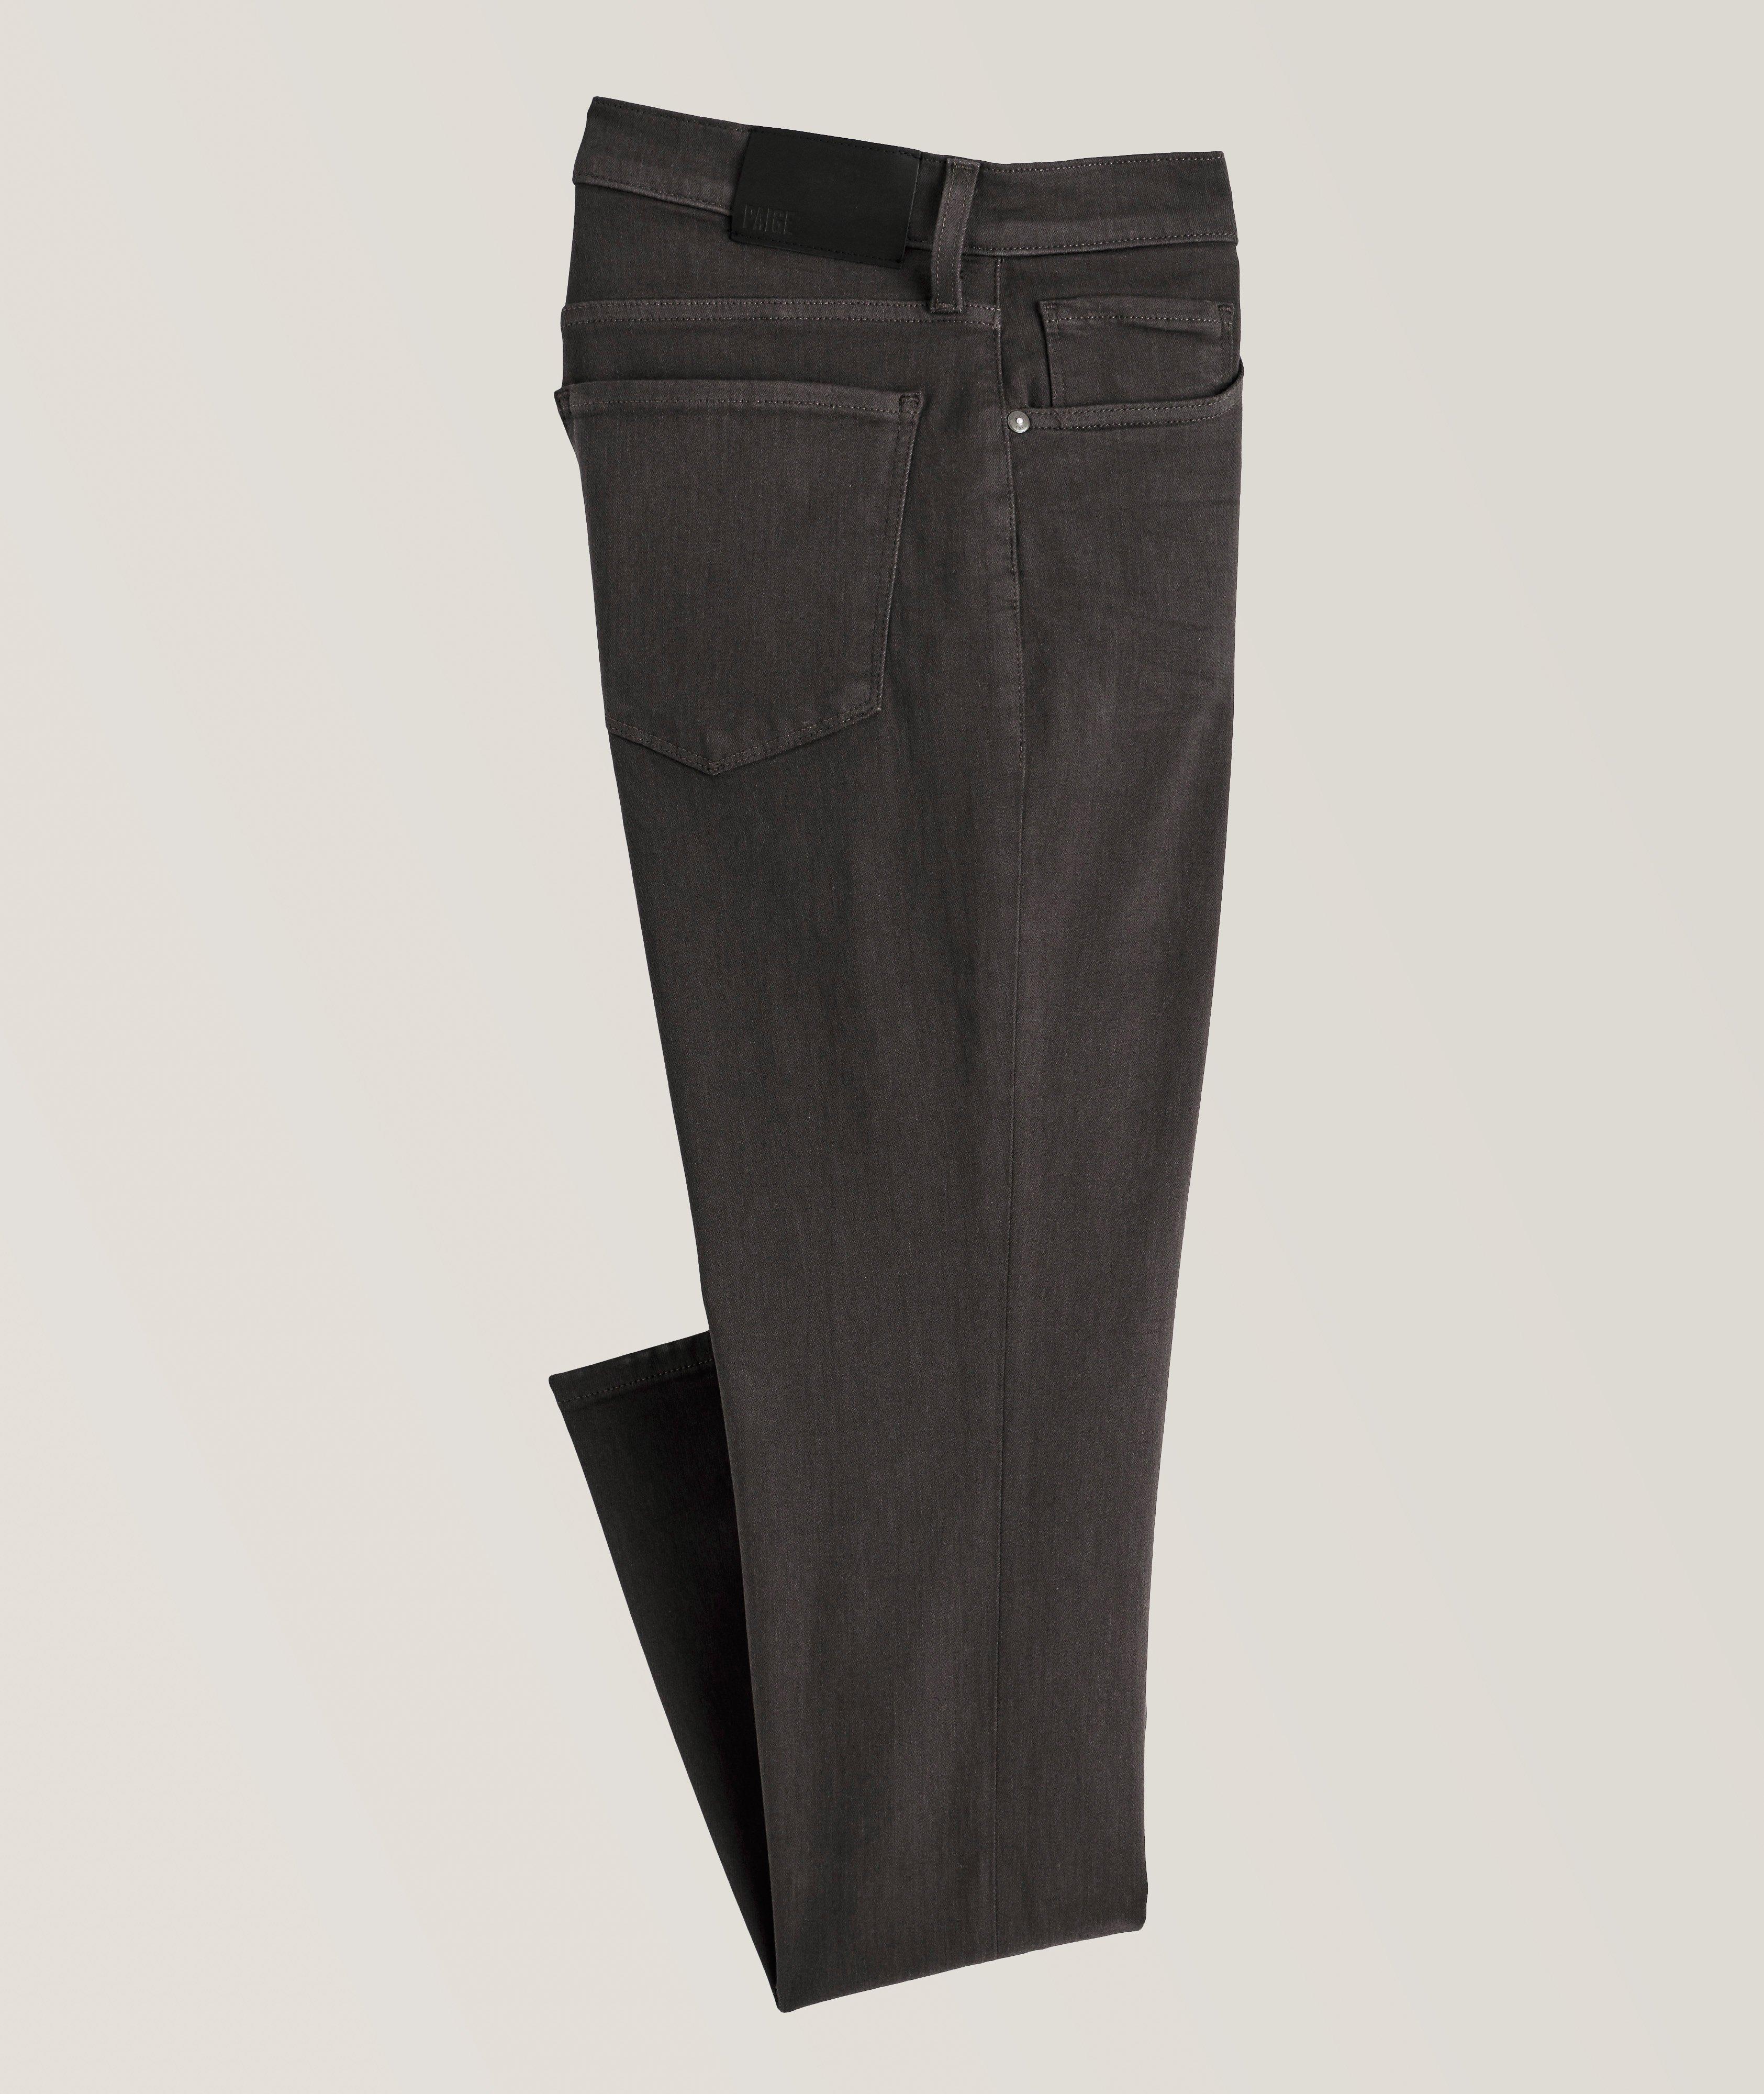 Lennox Slim-Fit Transcend Jeans image 0